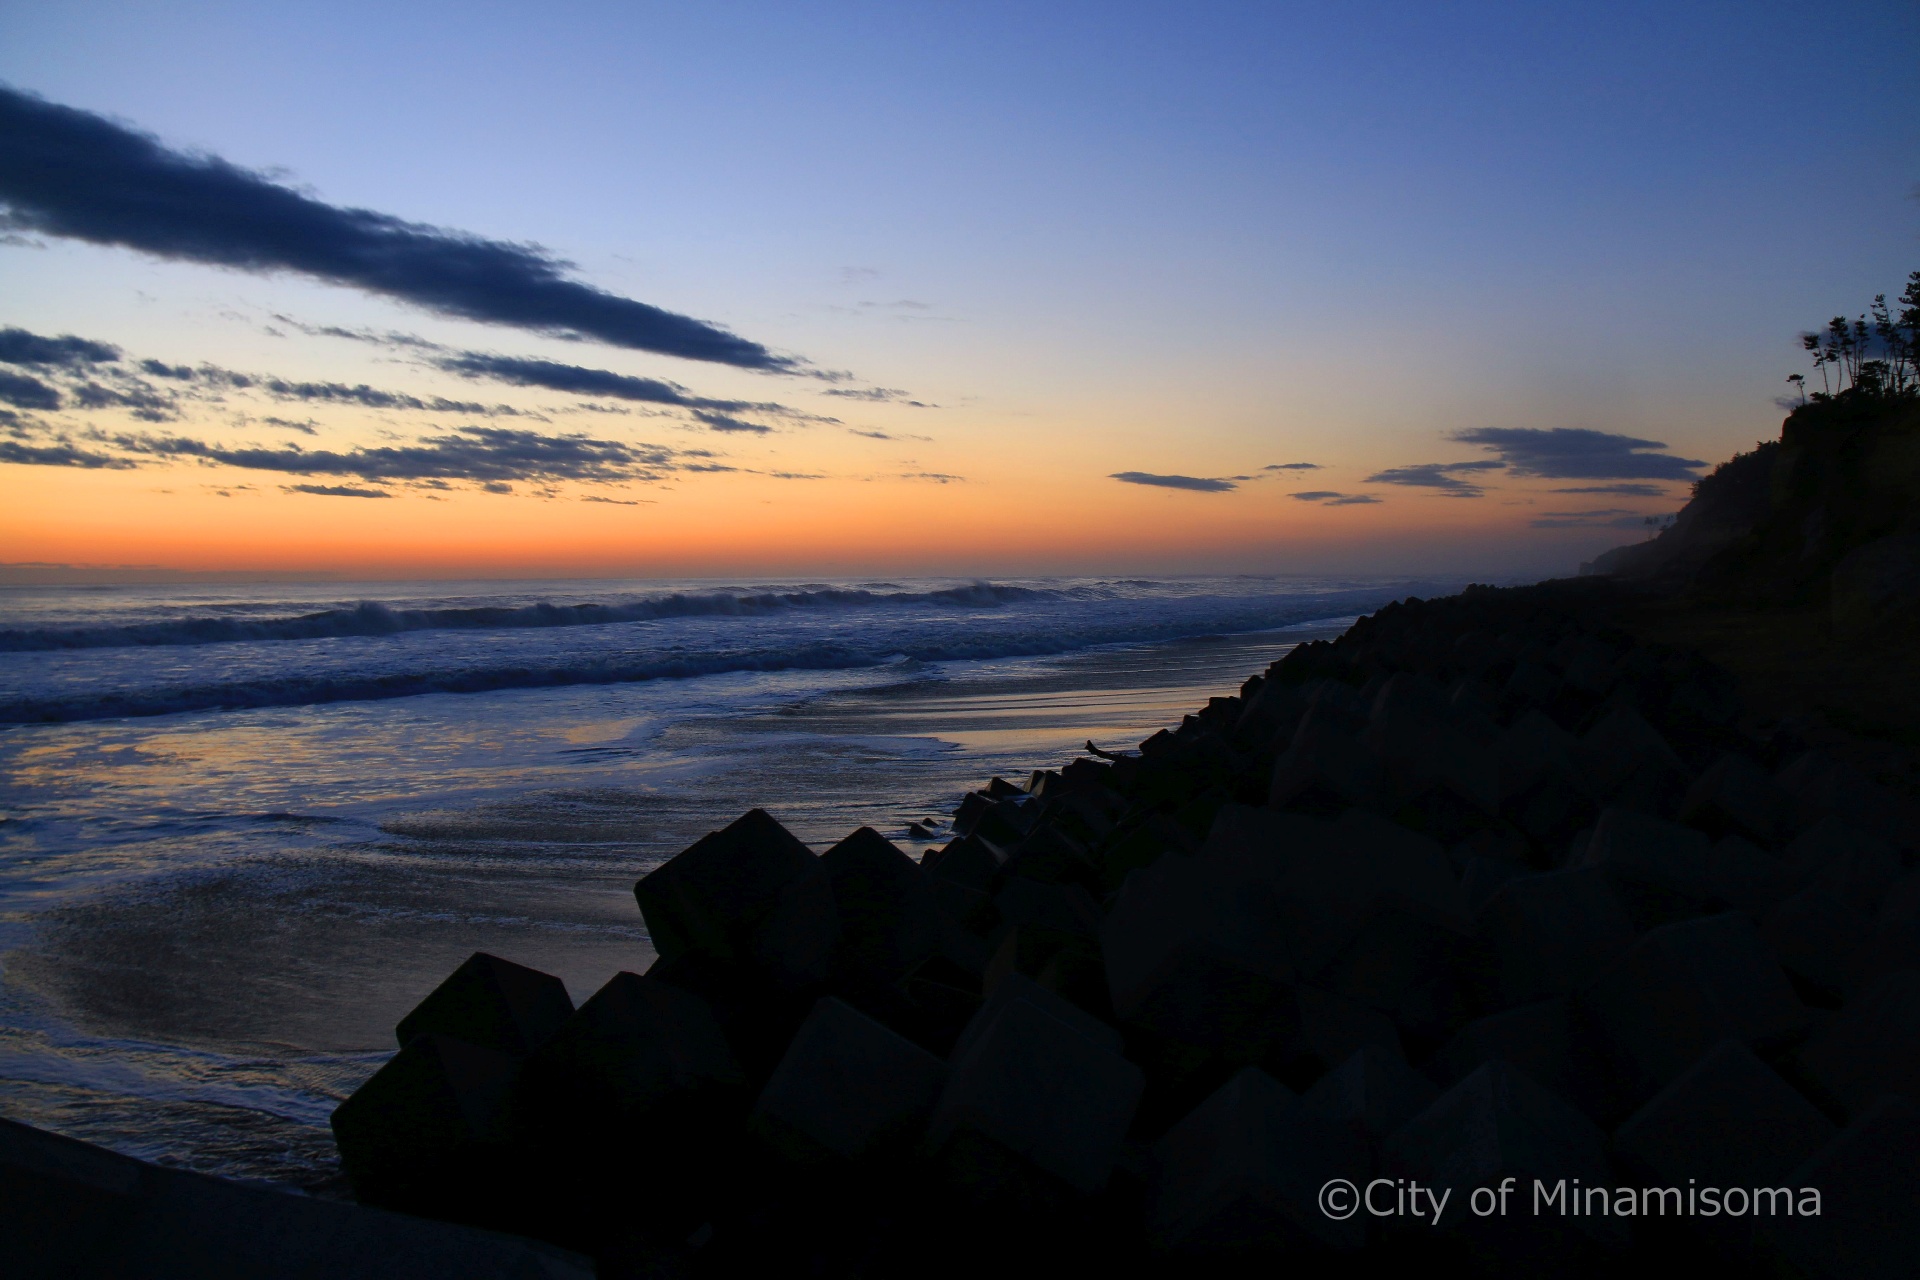 早朝の北泉海岸の様子。青とオレンジのグラデーションの空が、海に映っている。岸壁は黒いシルエットになっている。